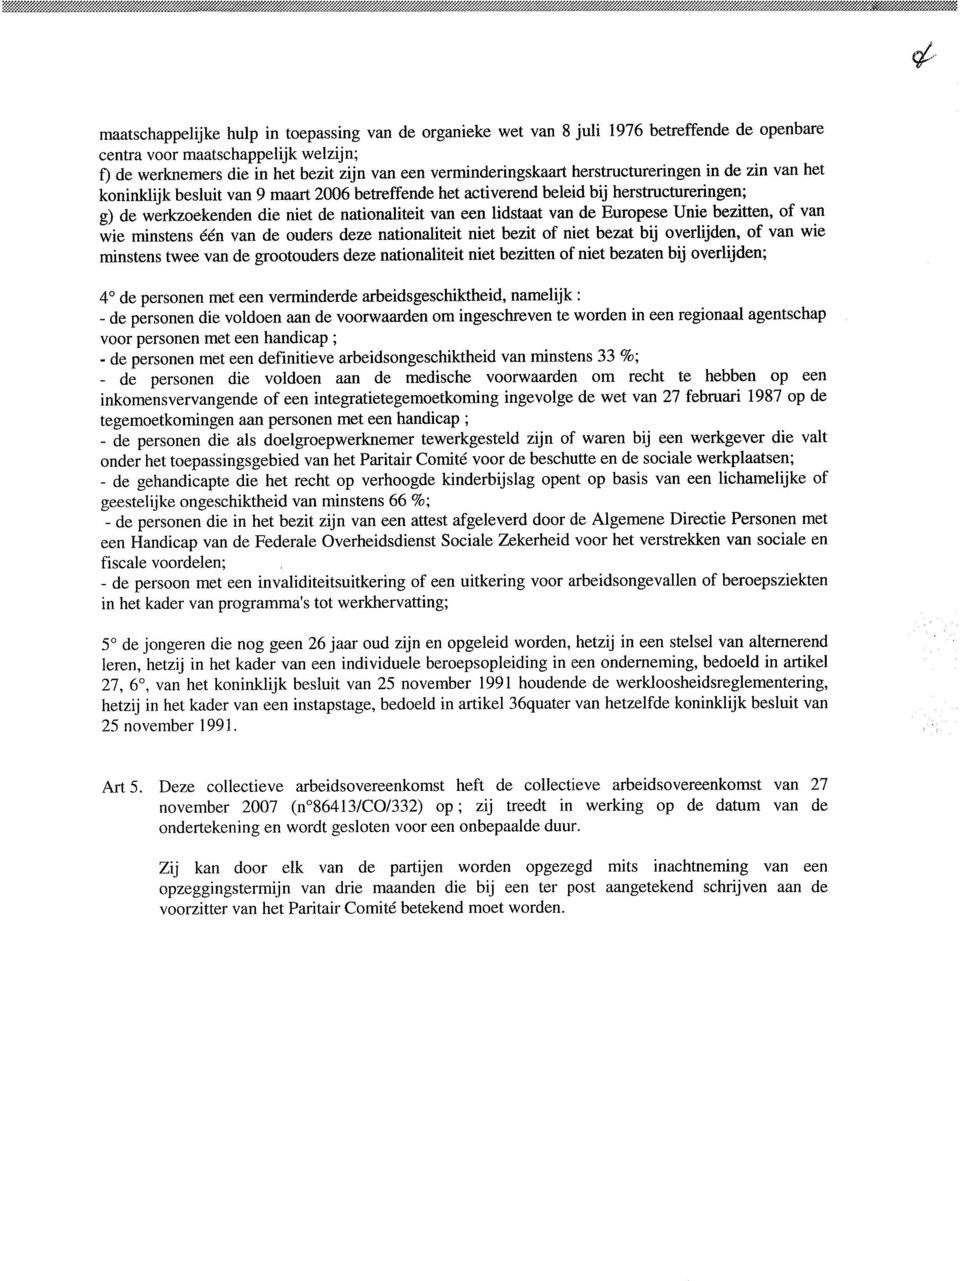 herstructureringen in de zin van het koninklijk besluit van 9 maart 2006 betreffende het activerend beleid bij herstructureringen; g) de werkzoekenden die niet de nationaliteit van een lidstaat van